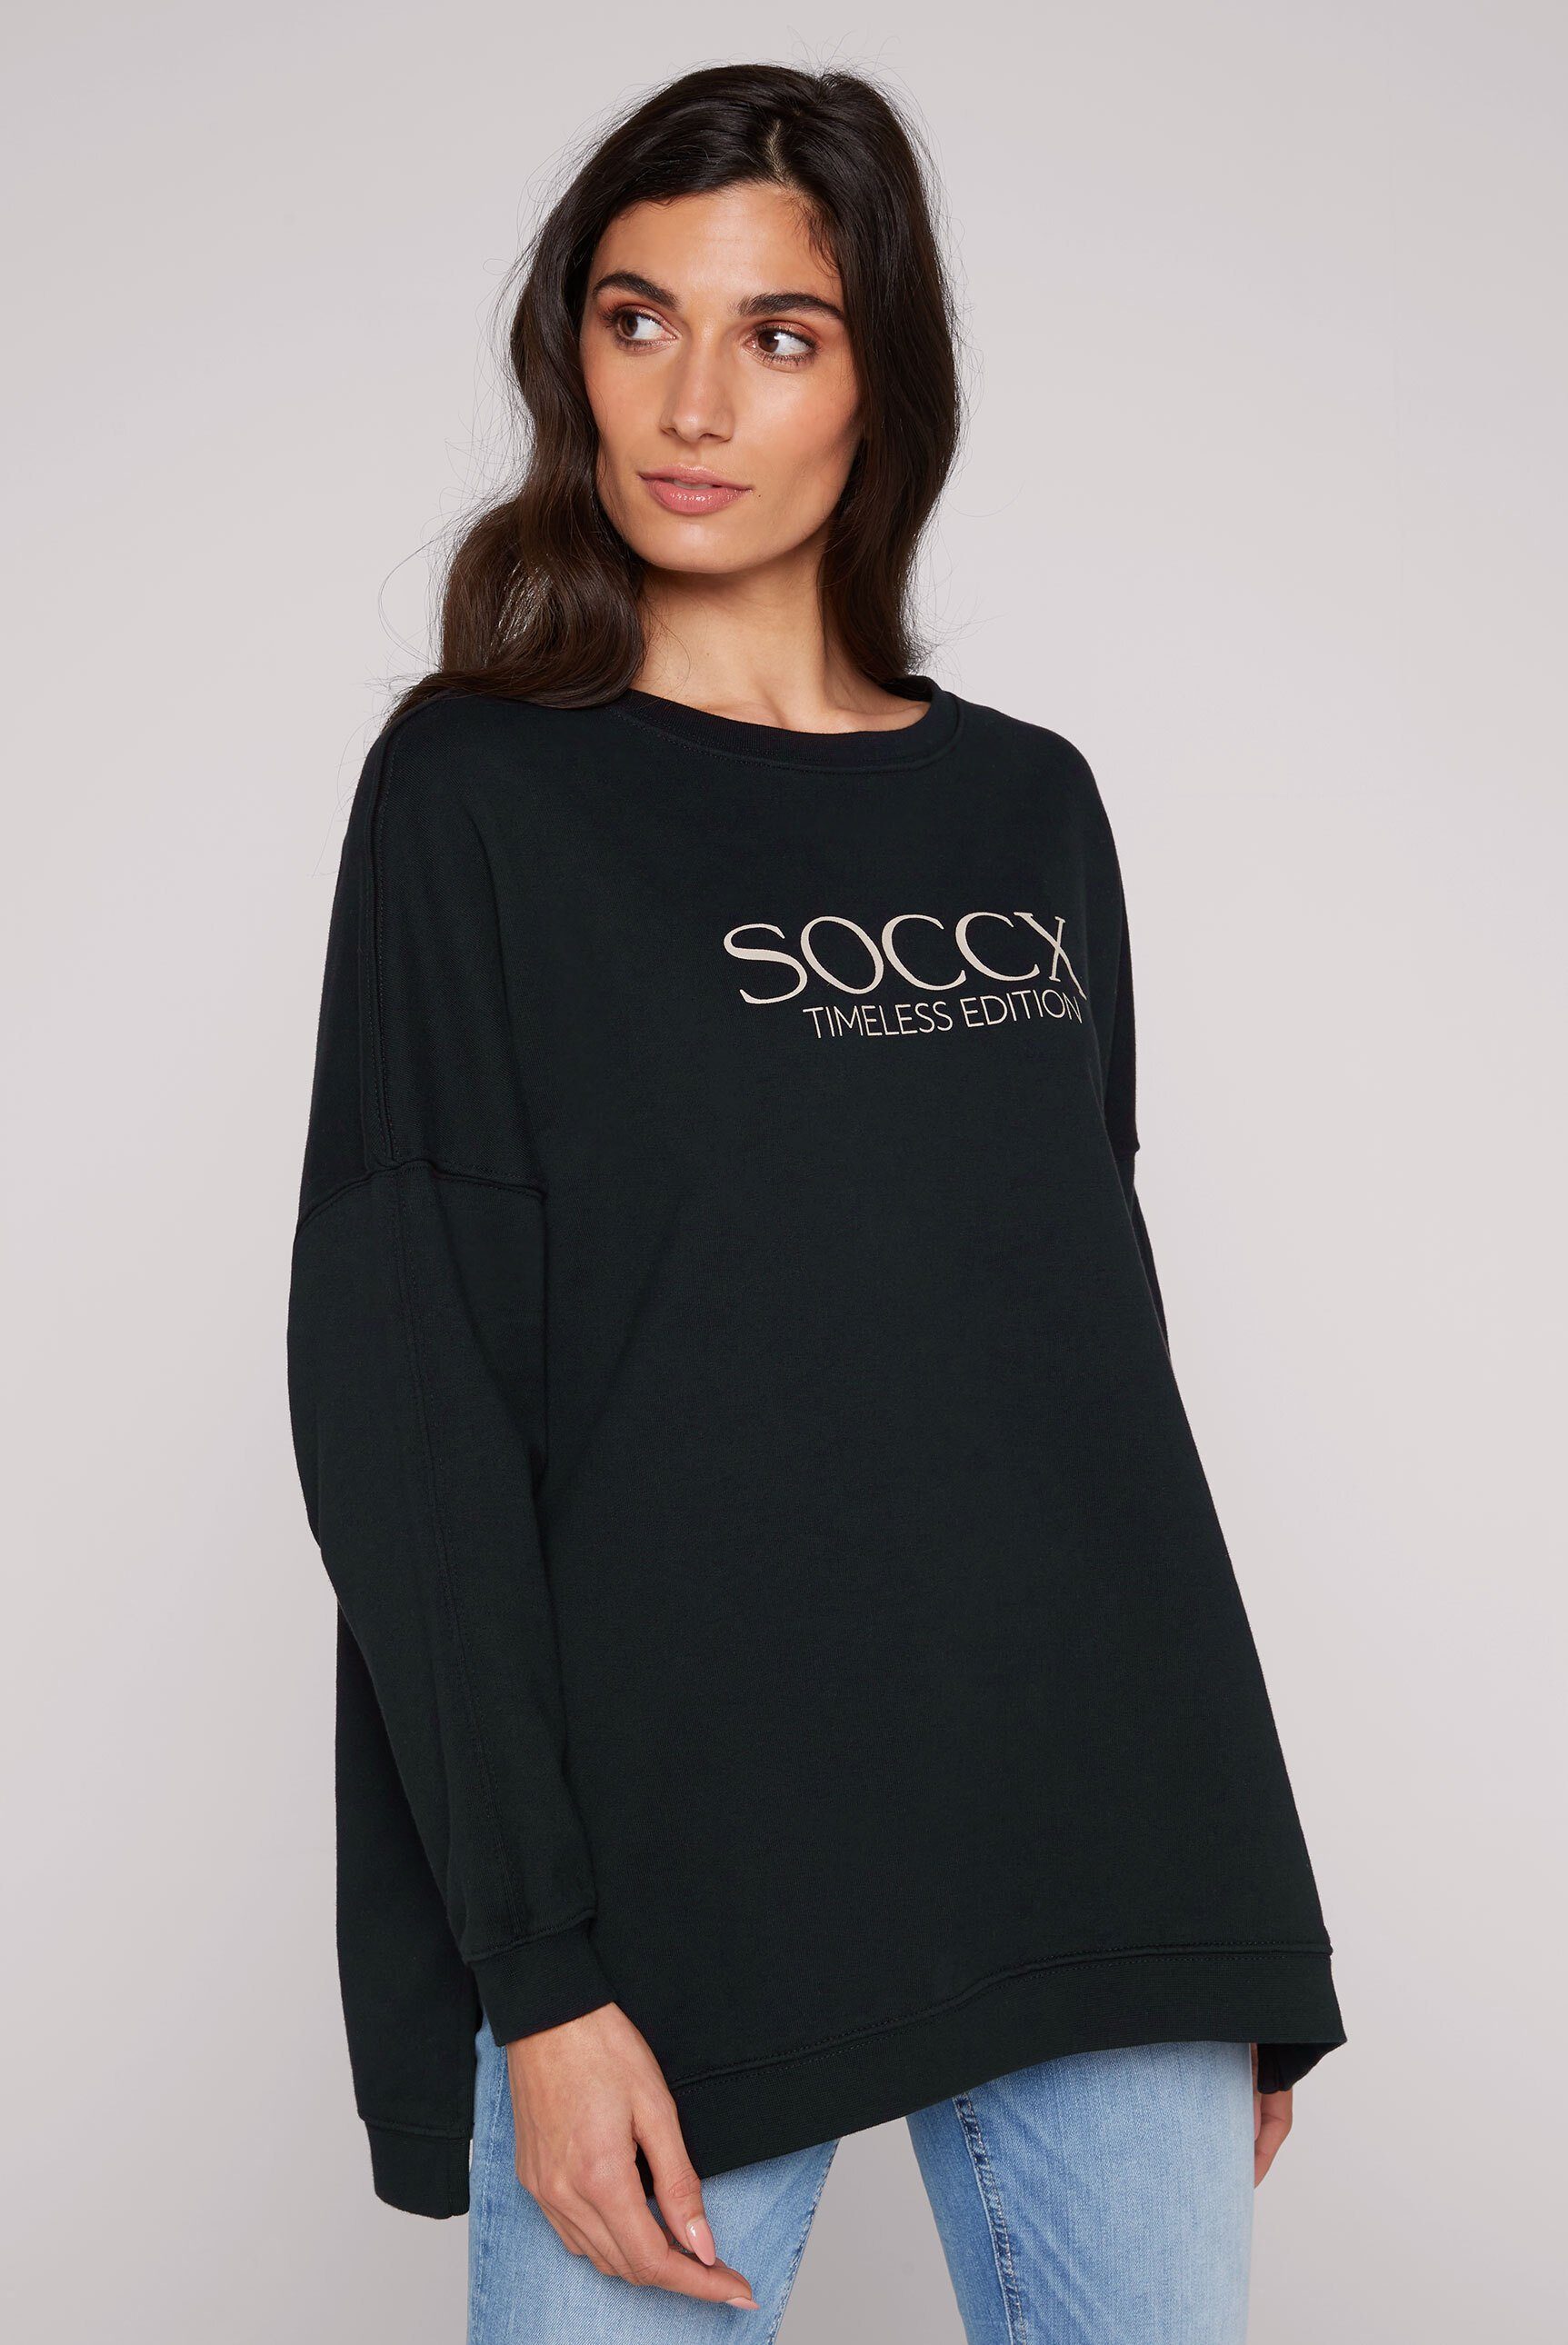 Print Schultern, SOCCX überschnittenen mit vorne Logo Longsweatshirt